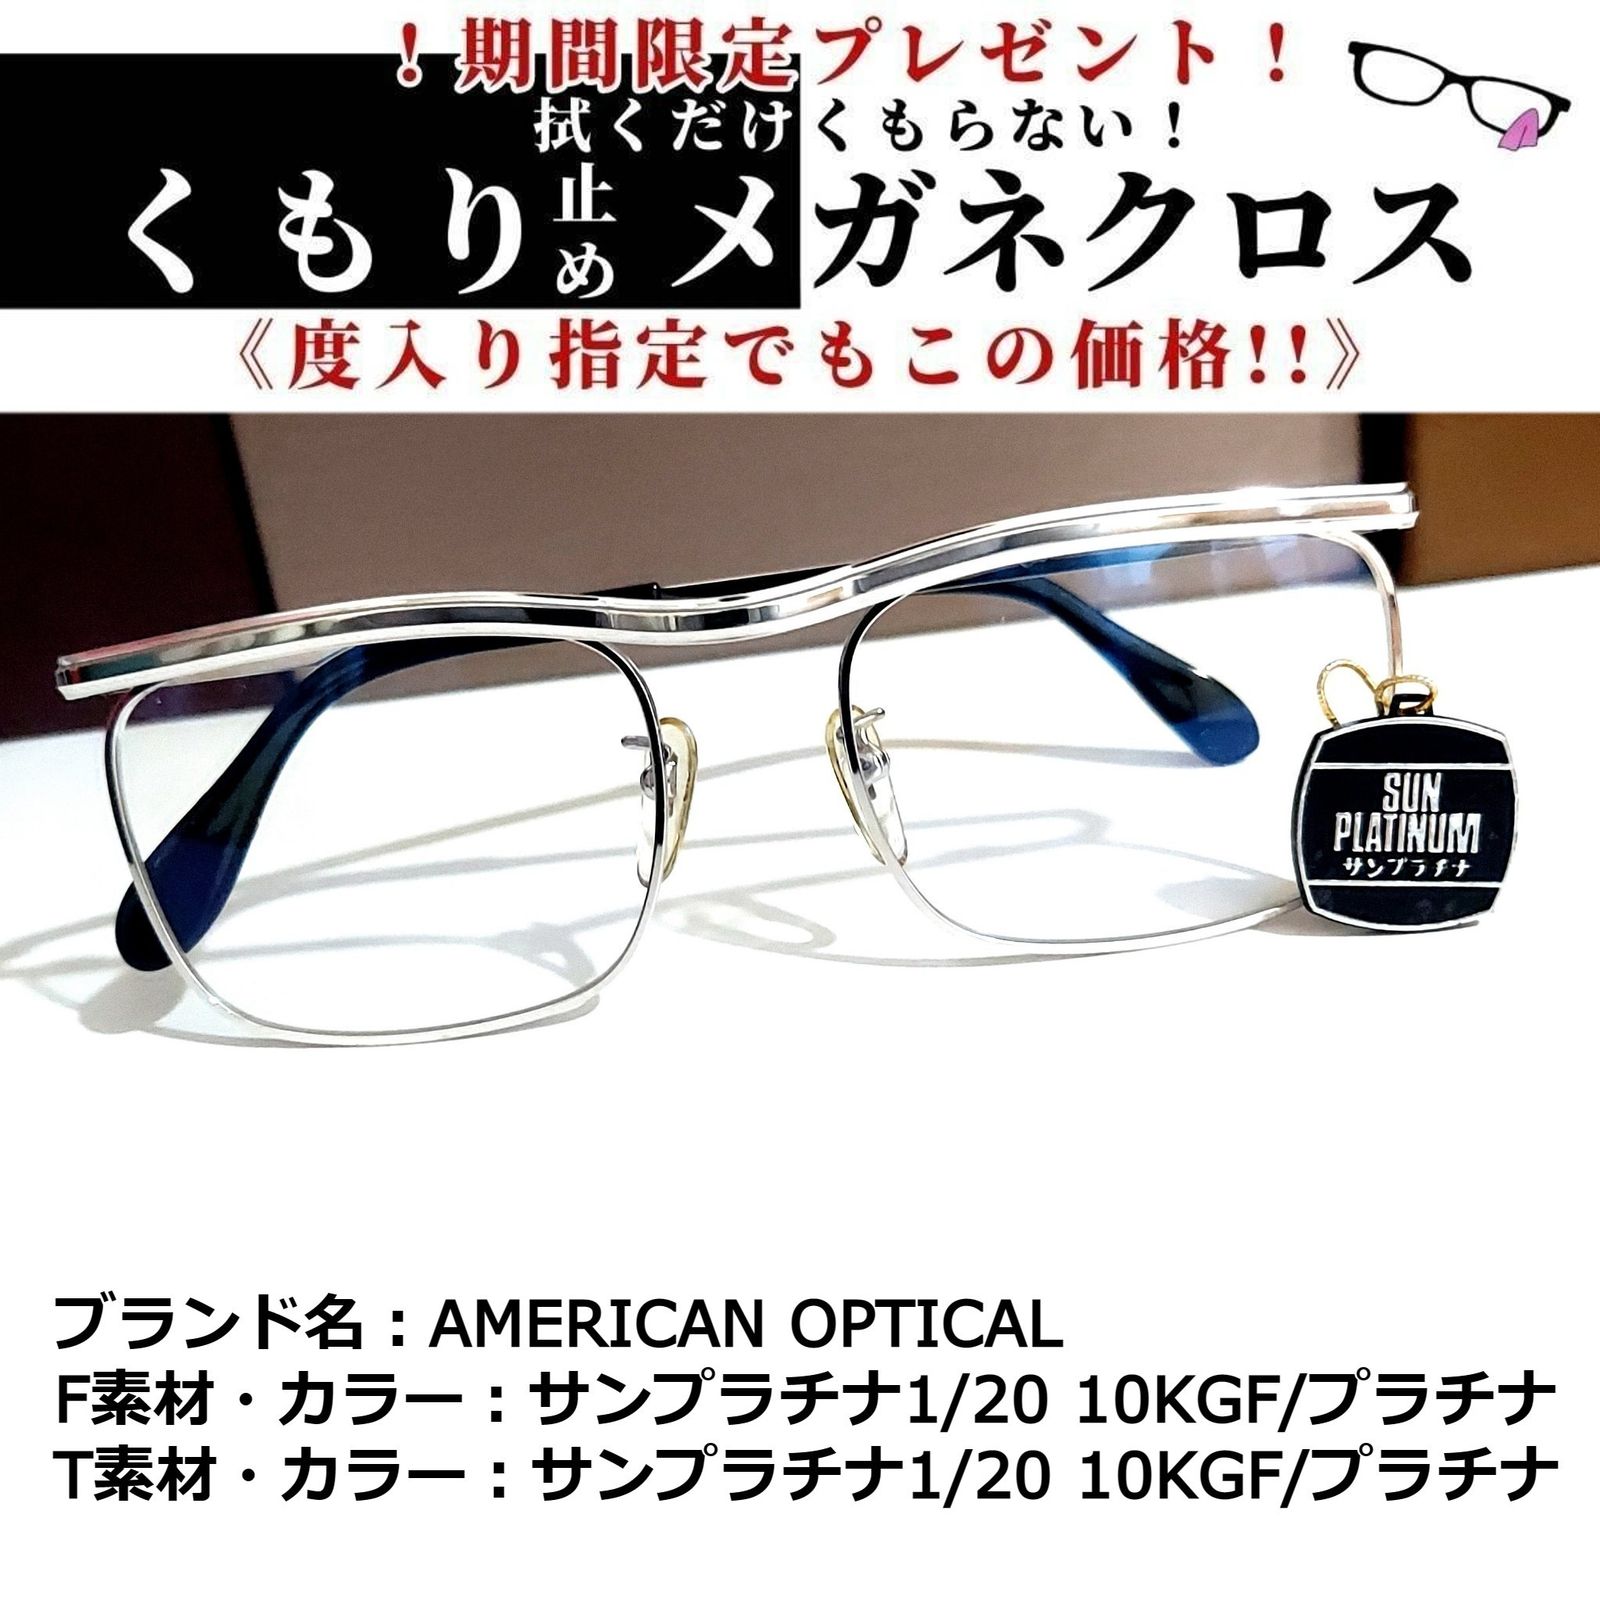 送料無料/新品】 No.1840メガネ AMERICAN OPTICAL【度数入り込み価格